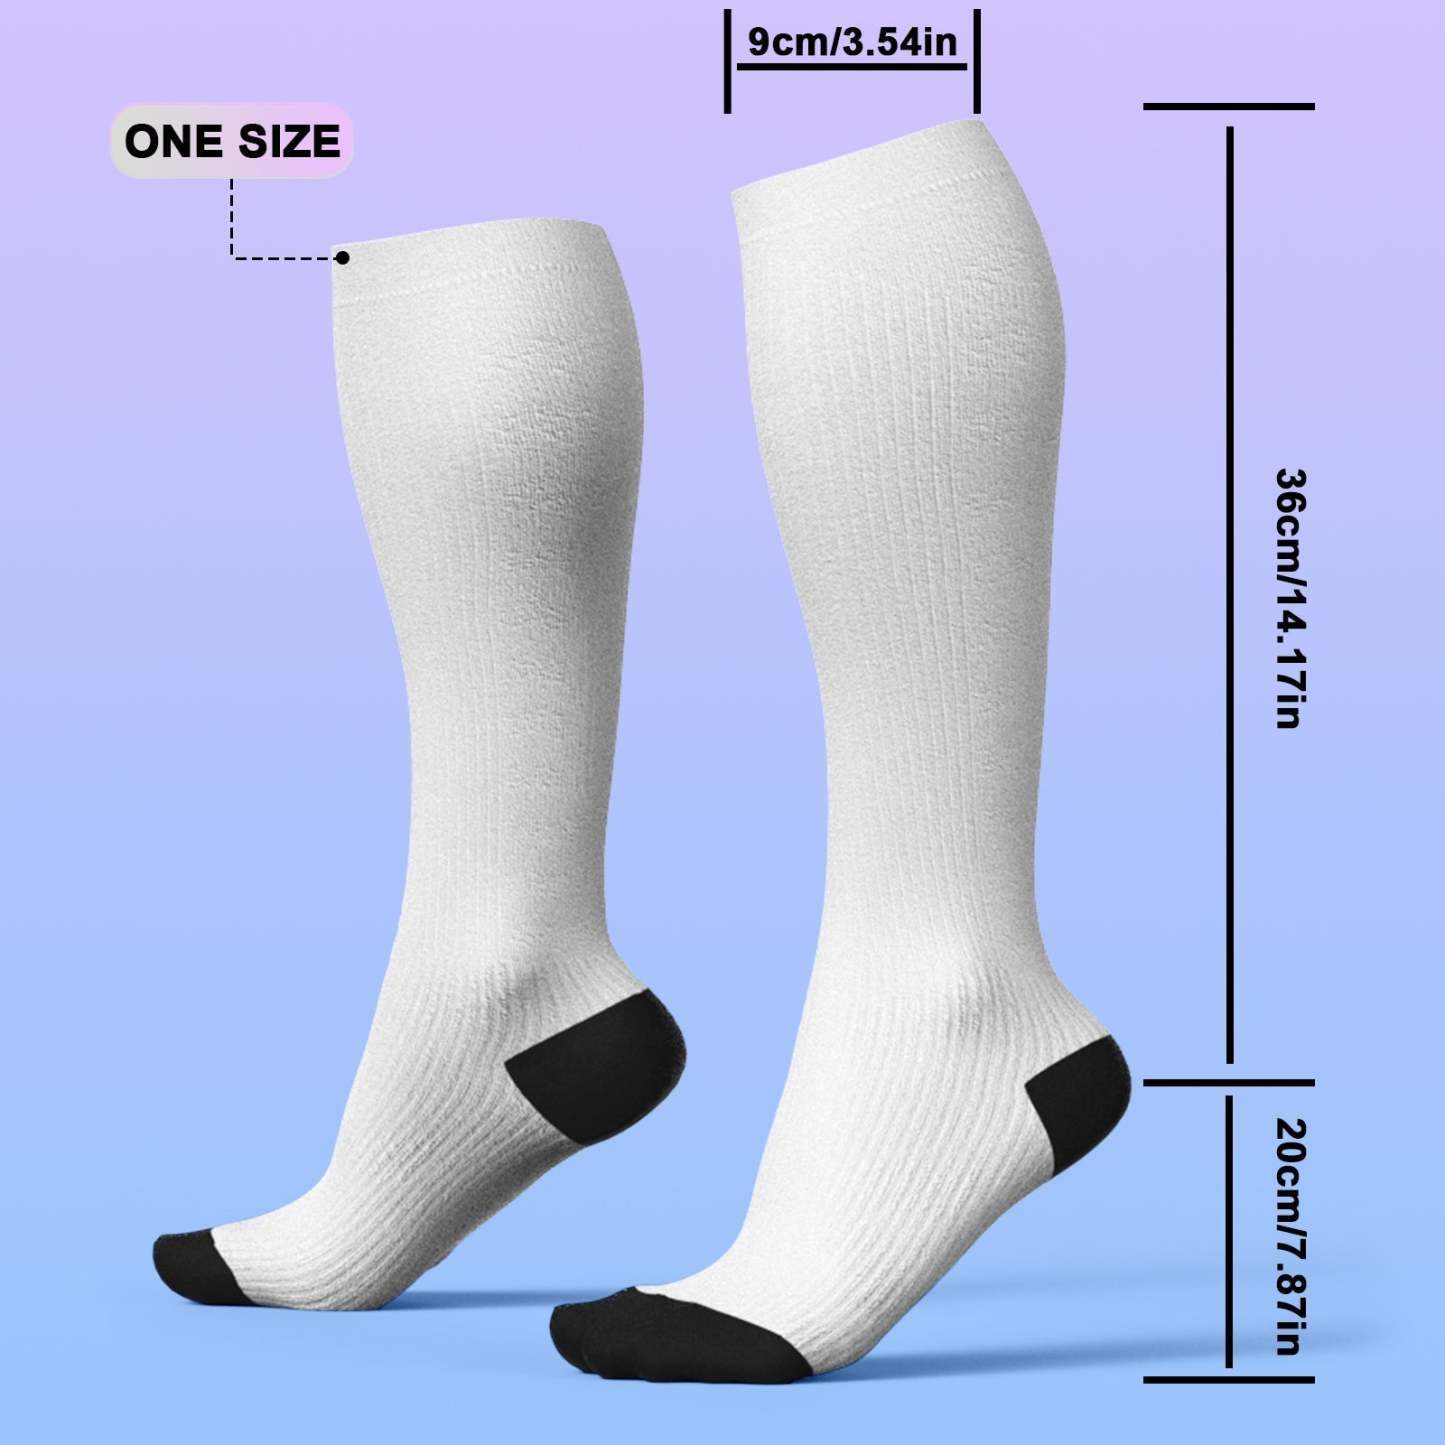 アップグレードカスタム通気性着圧ニーハイソックス - オンライン プレビューできる写真と名前入れ可能な靴下 - 愛